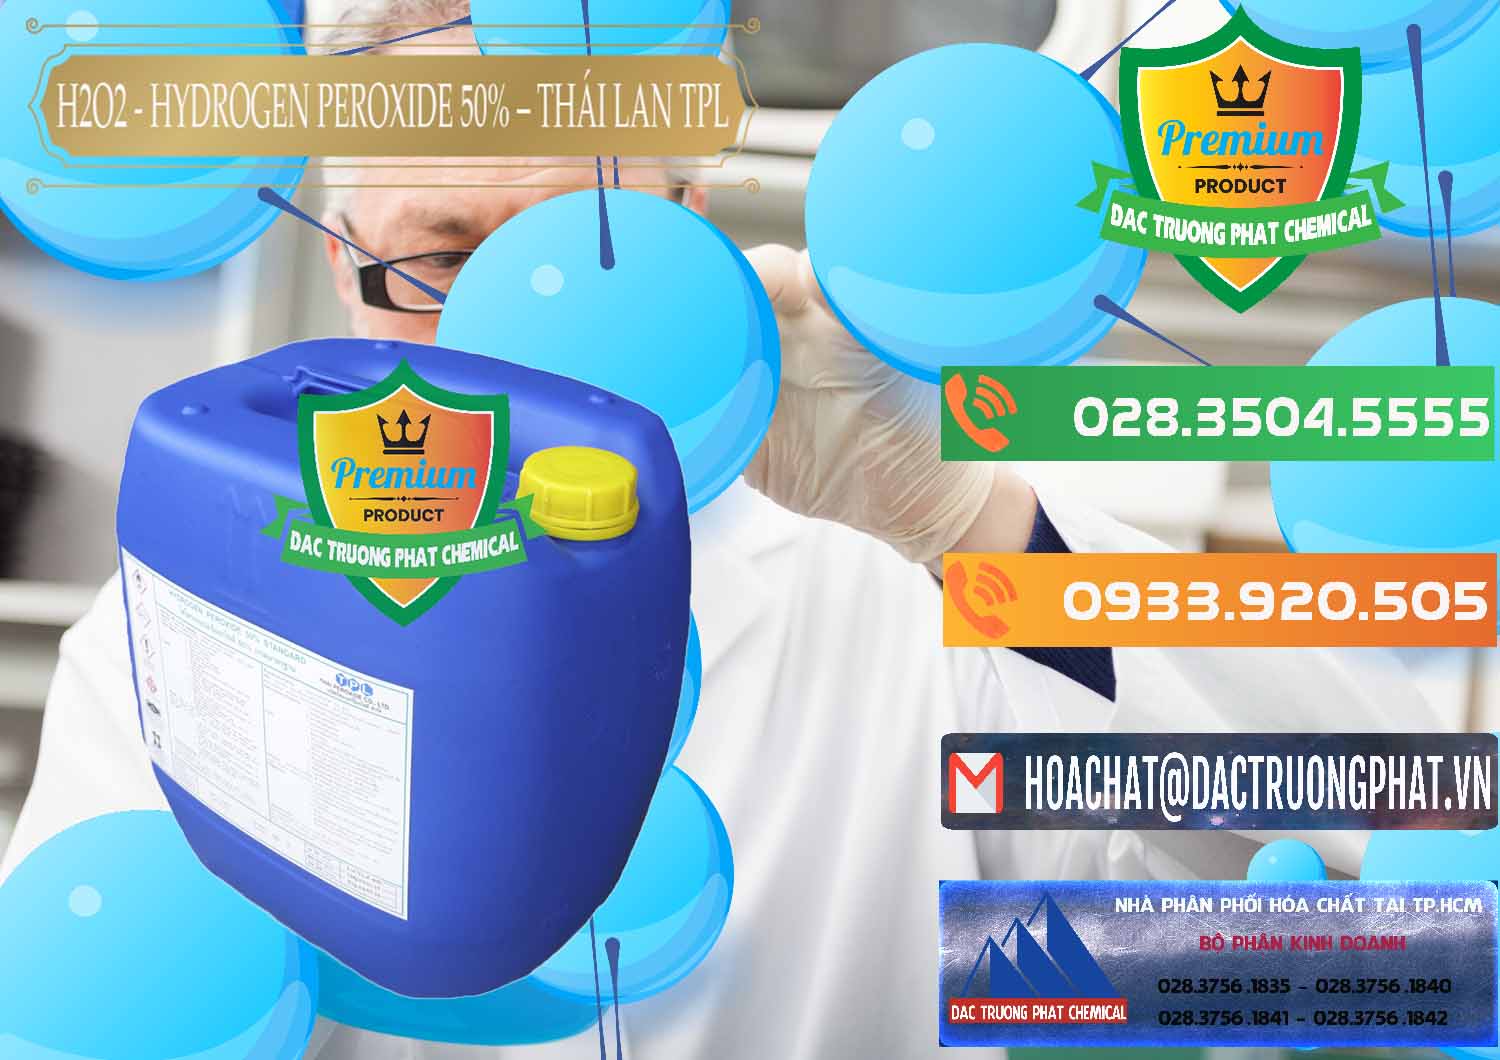 Cty chuyên bán và cung cấp H2O2 - Hydrogen Peroxide 50% Thái Lan TPL - 0076 - Công ty kinh doanh _ phân phối hóa chất tại TP.HCM - hoachatxulynuoc.com.vn